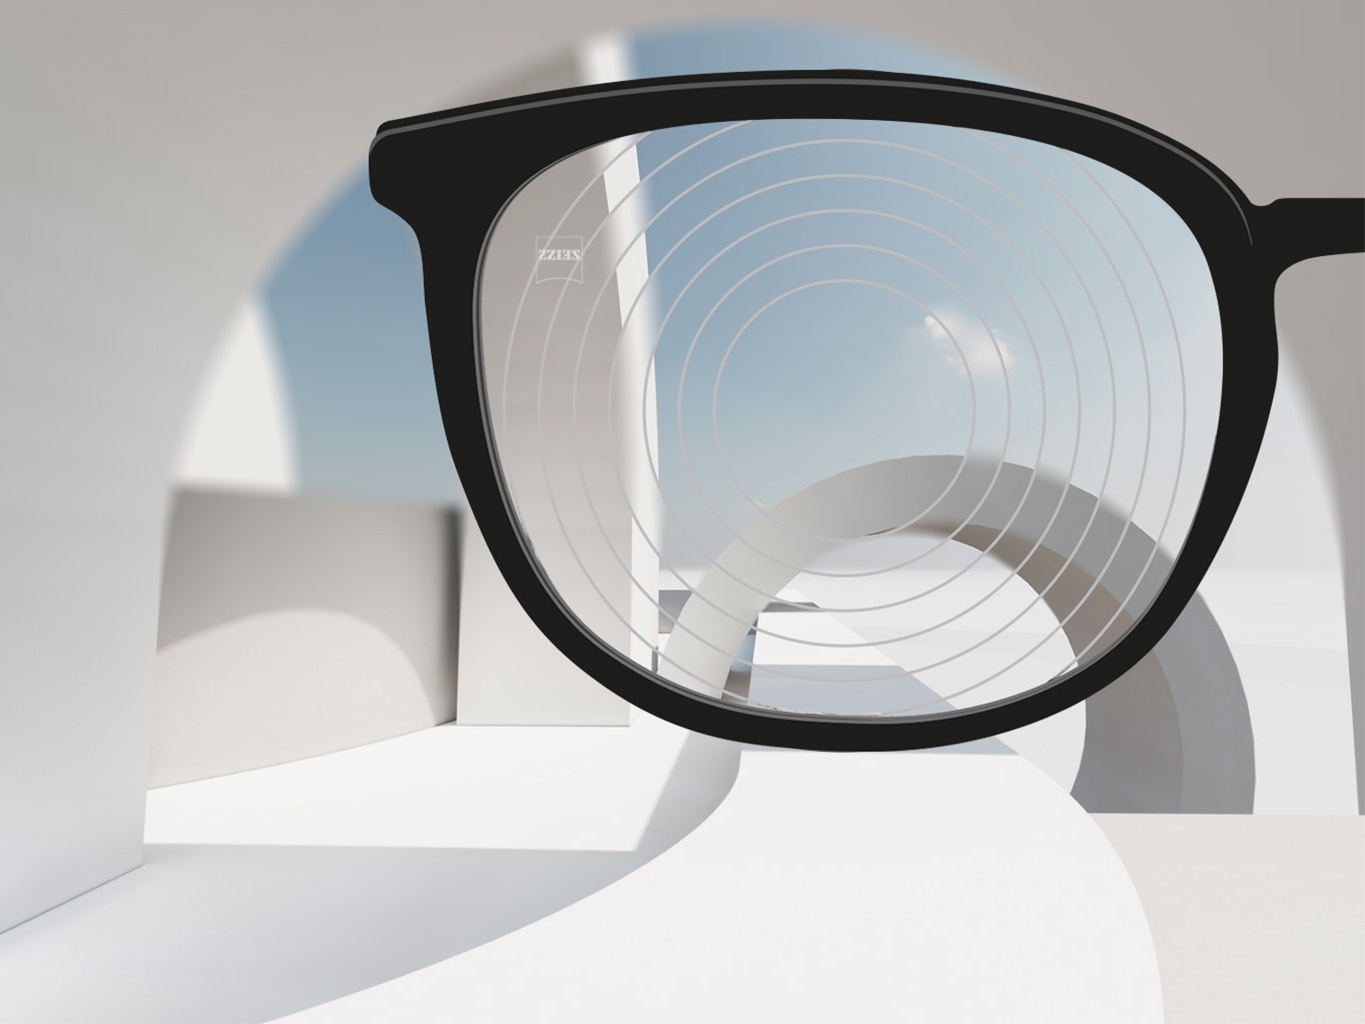 Une image rapprochée de verres de gestion de la myopie de ZEISS, avec une monture de lunettes et des cercles concentriques sur la surface des verres.